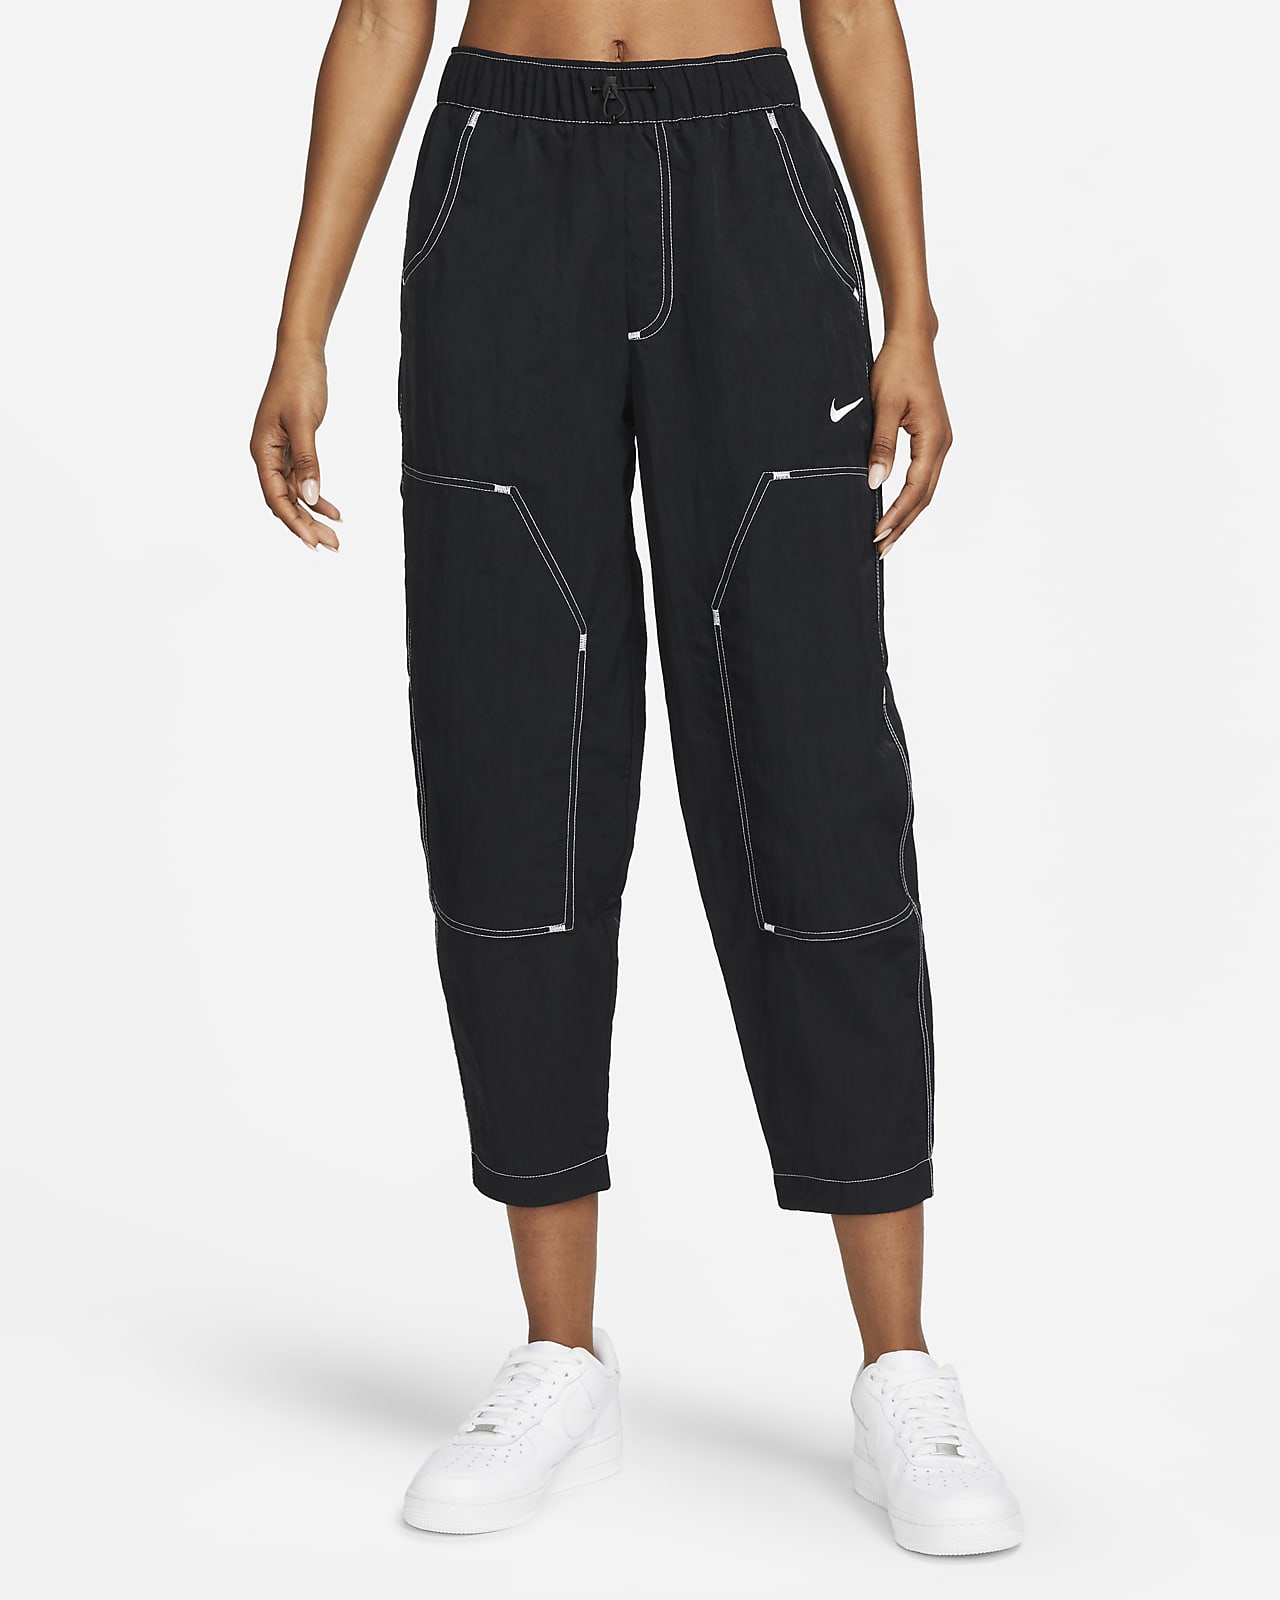 Nike Sportswear Women's Woven Pants.